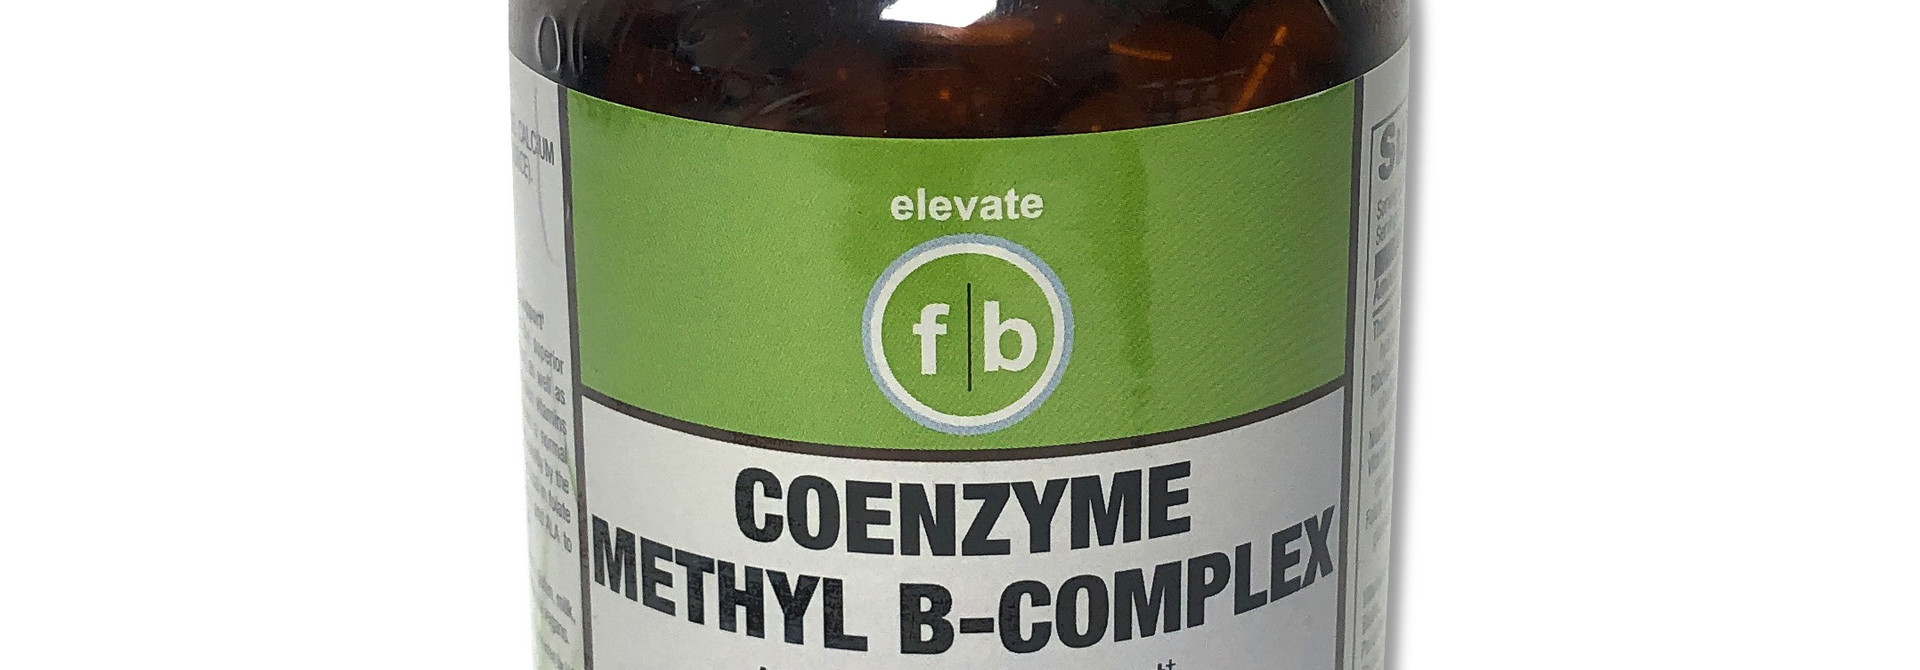 fb COENZYME METHYL B-COMPLEX